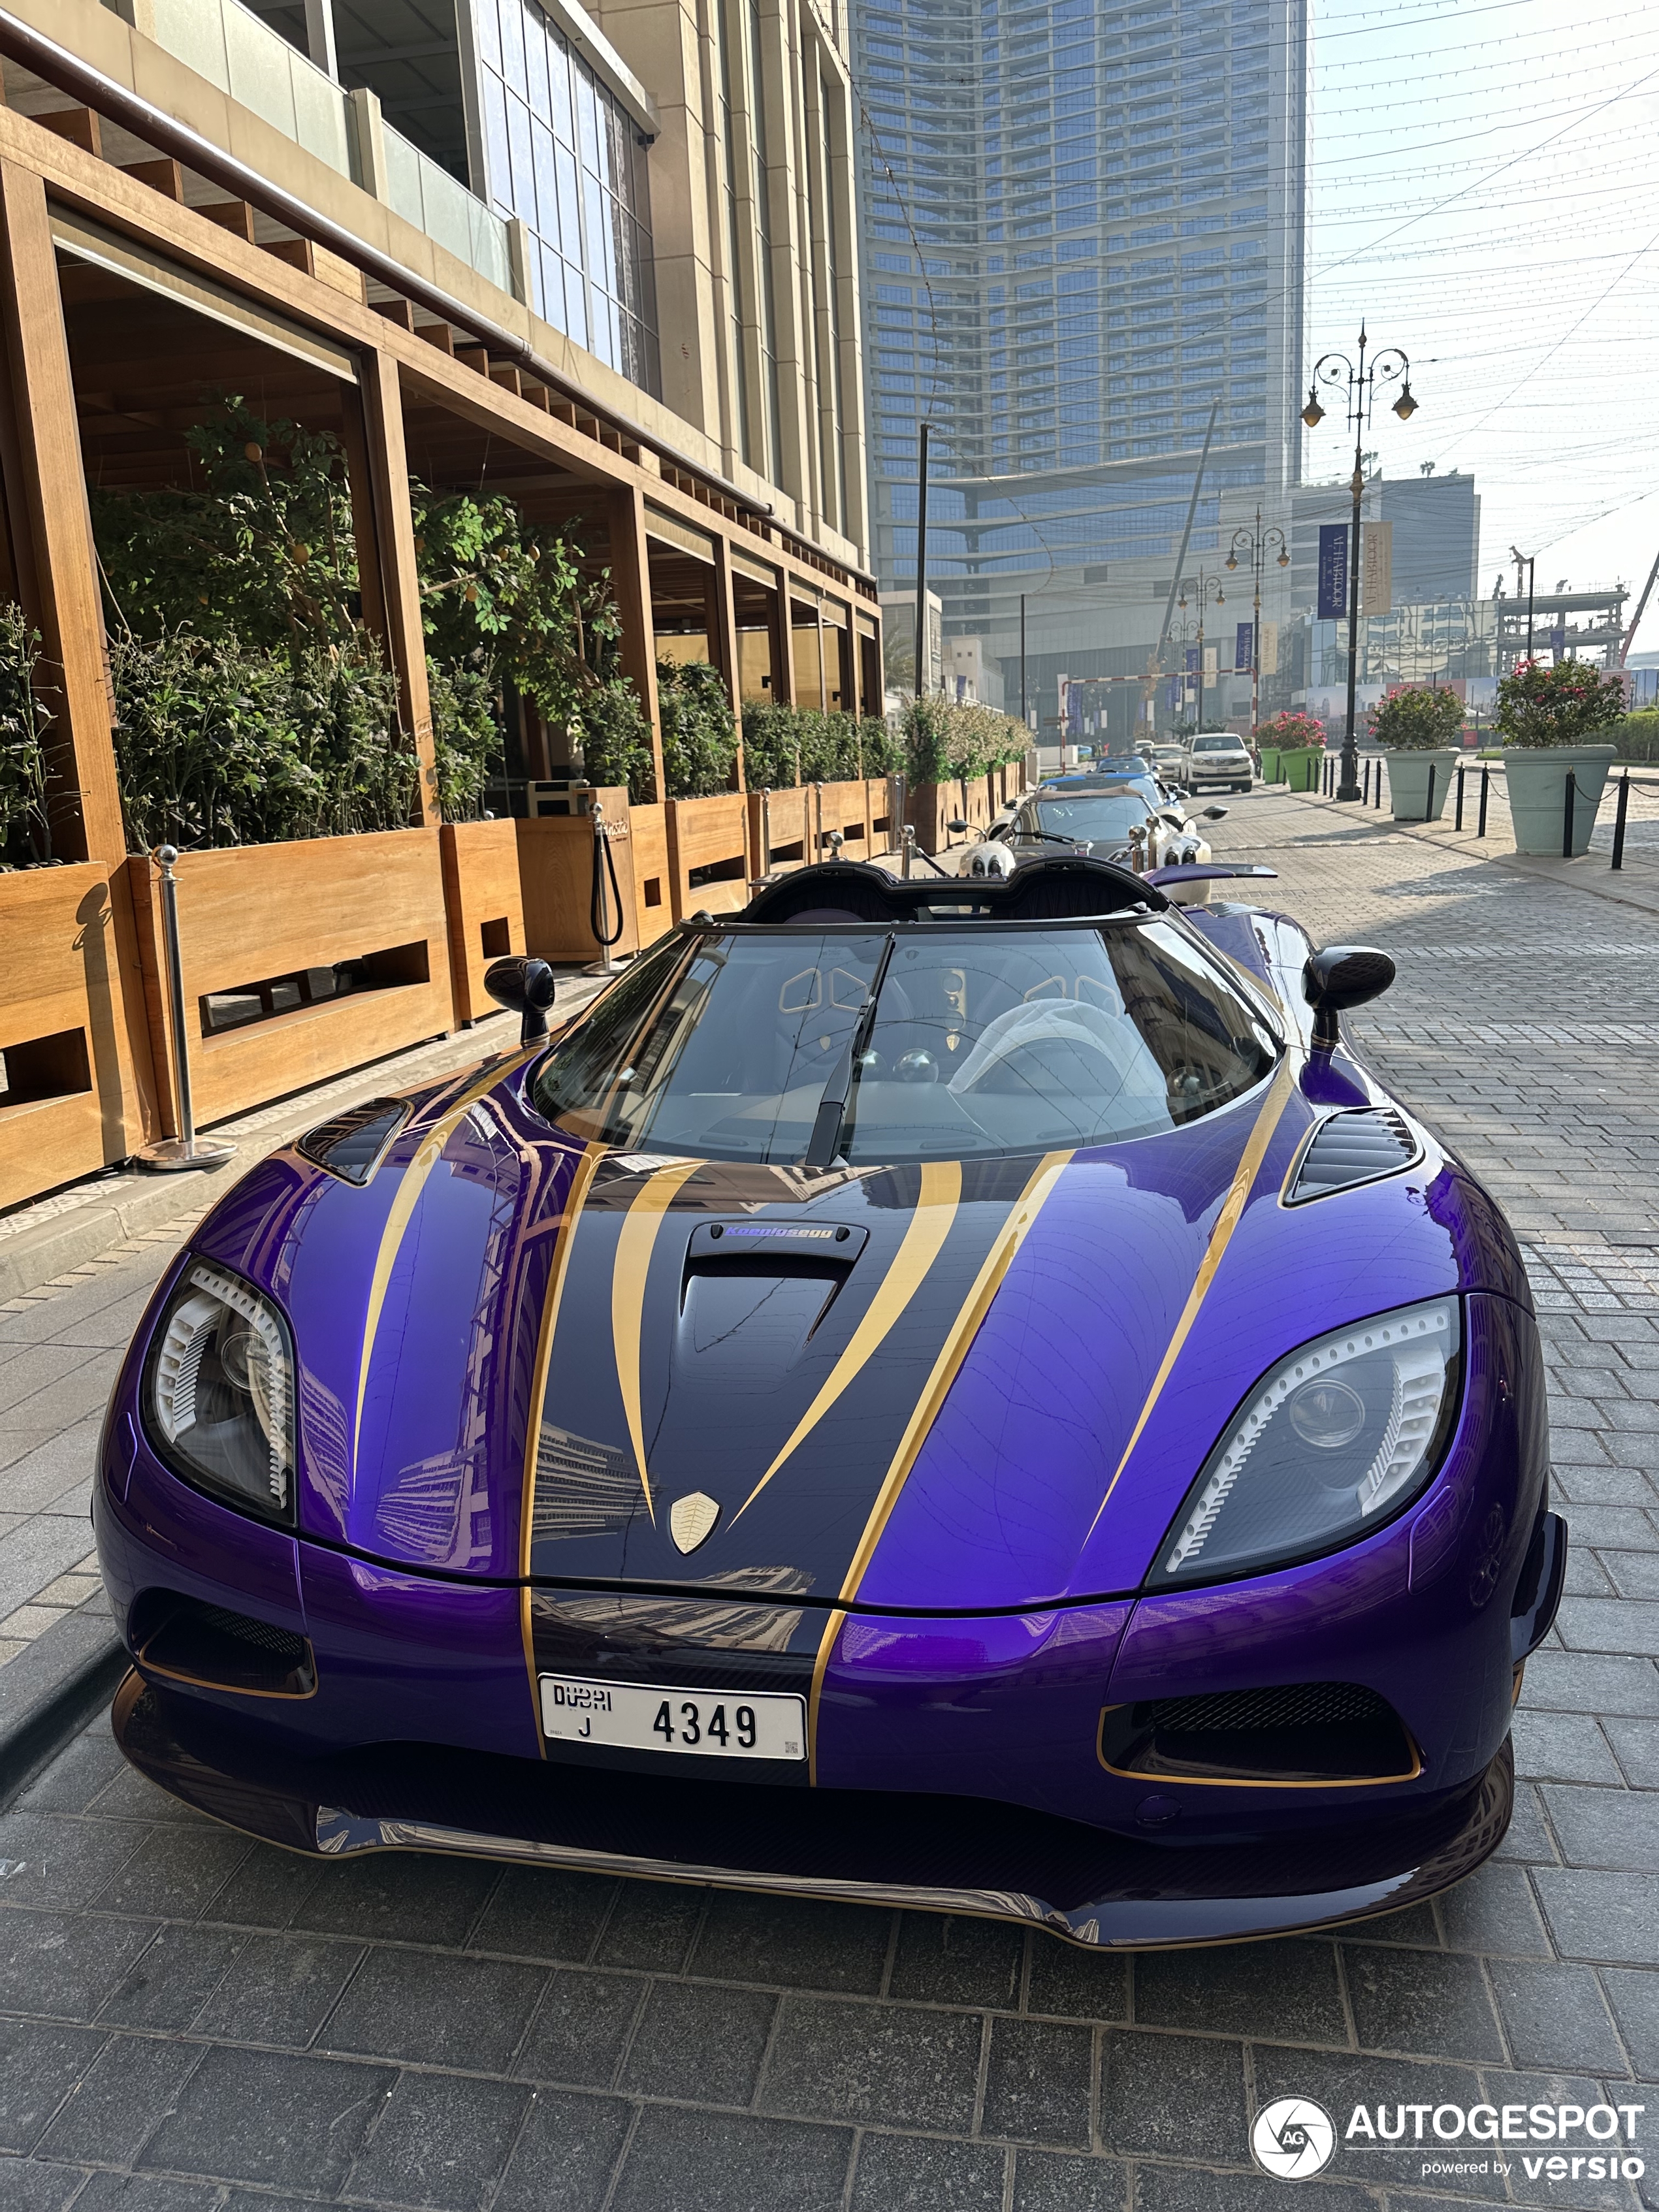 Pojavljuje se još jedan ljubičasti hiperautomobil, ovog puta u Dubaiju.